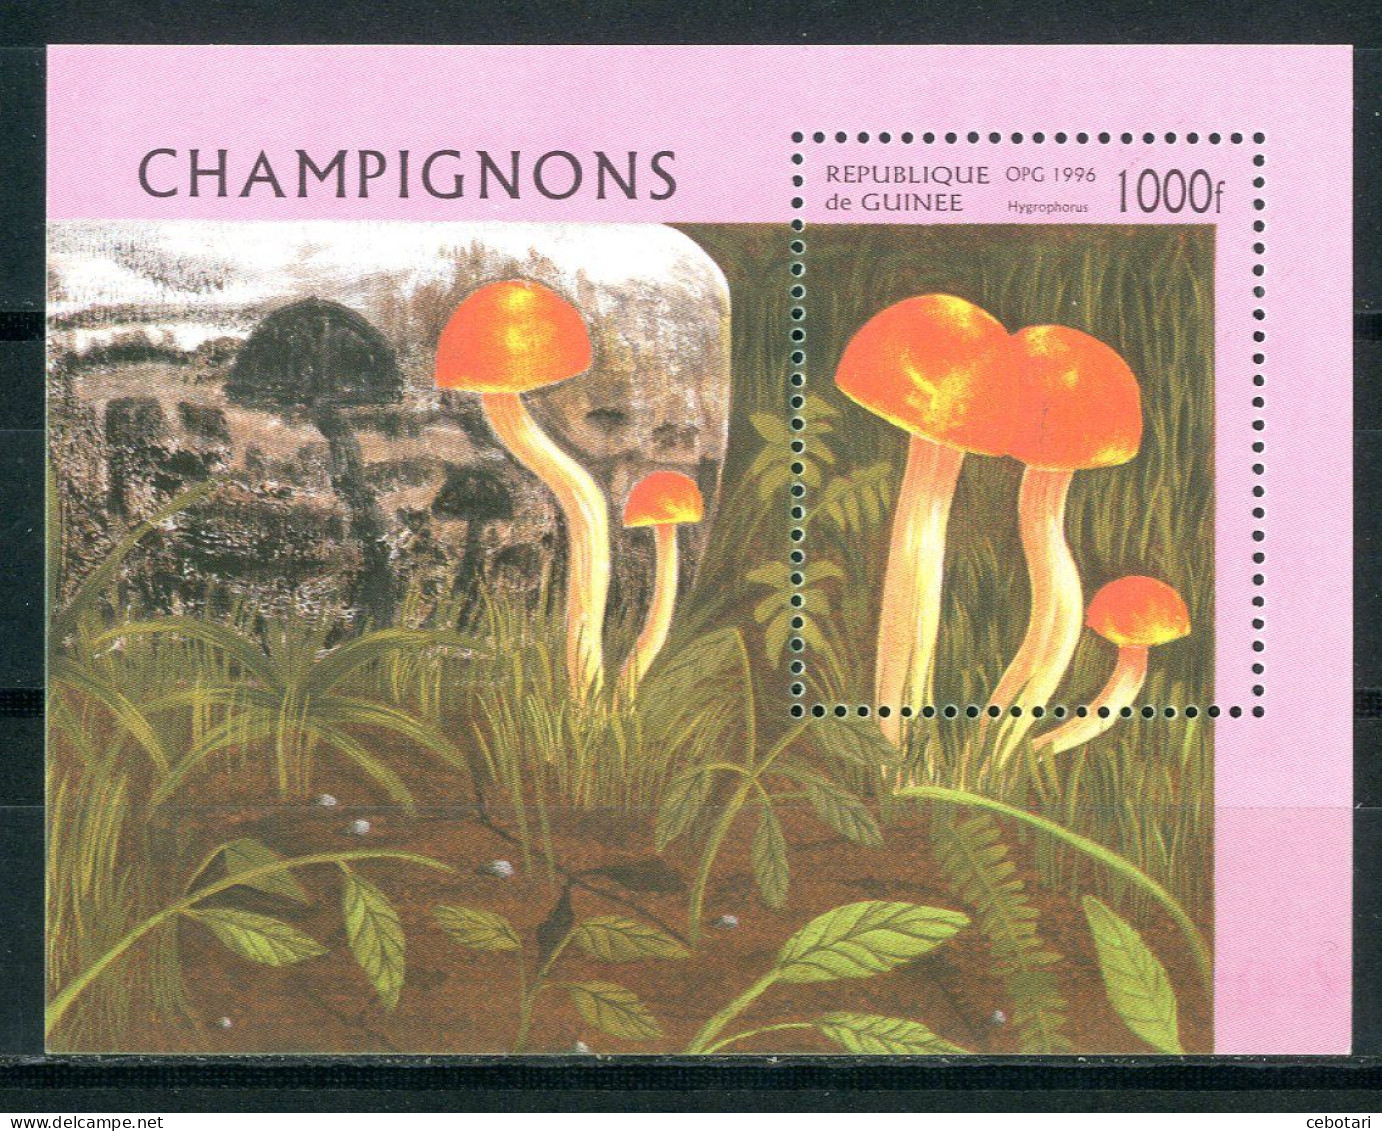 GUINEA / GUINEE 1996** - Funghi / Mushrooms - Miniblock. - Mushrooms